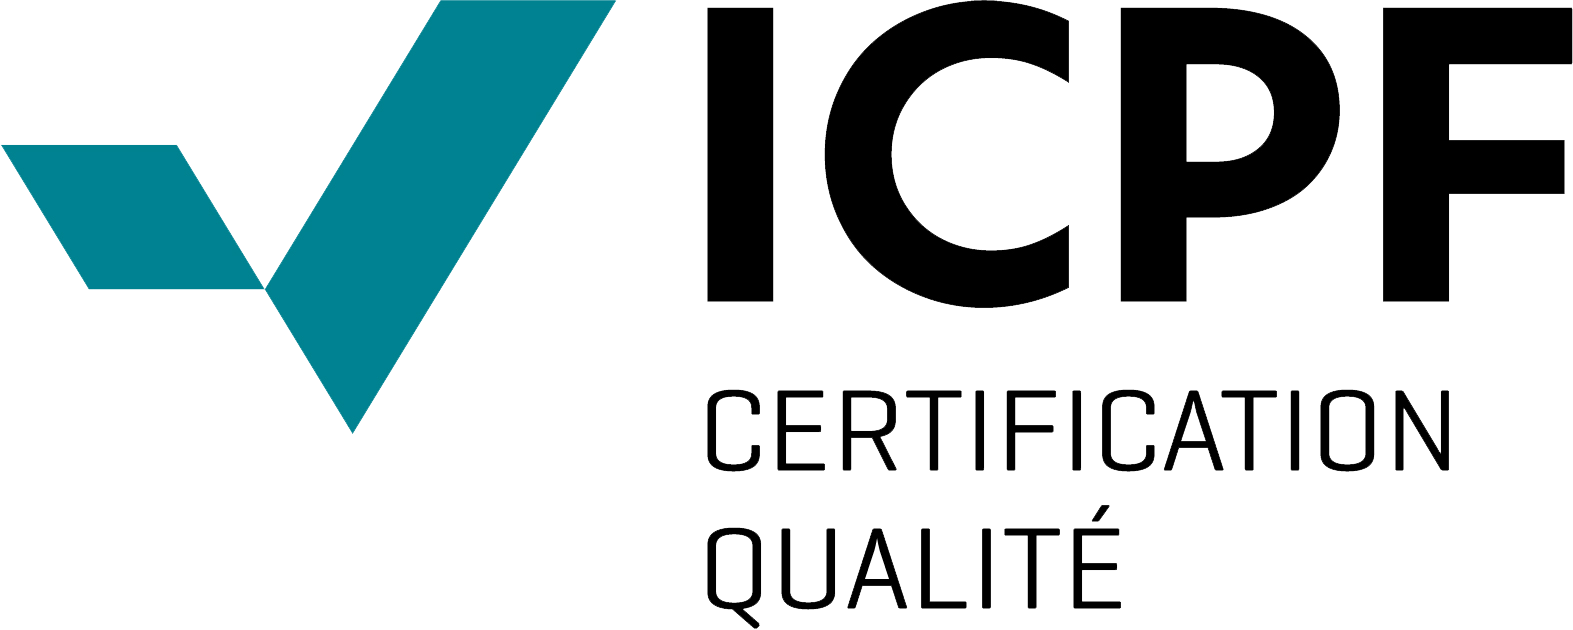 IEP certification qualité